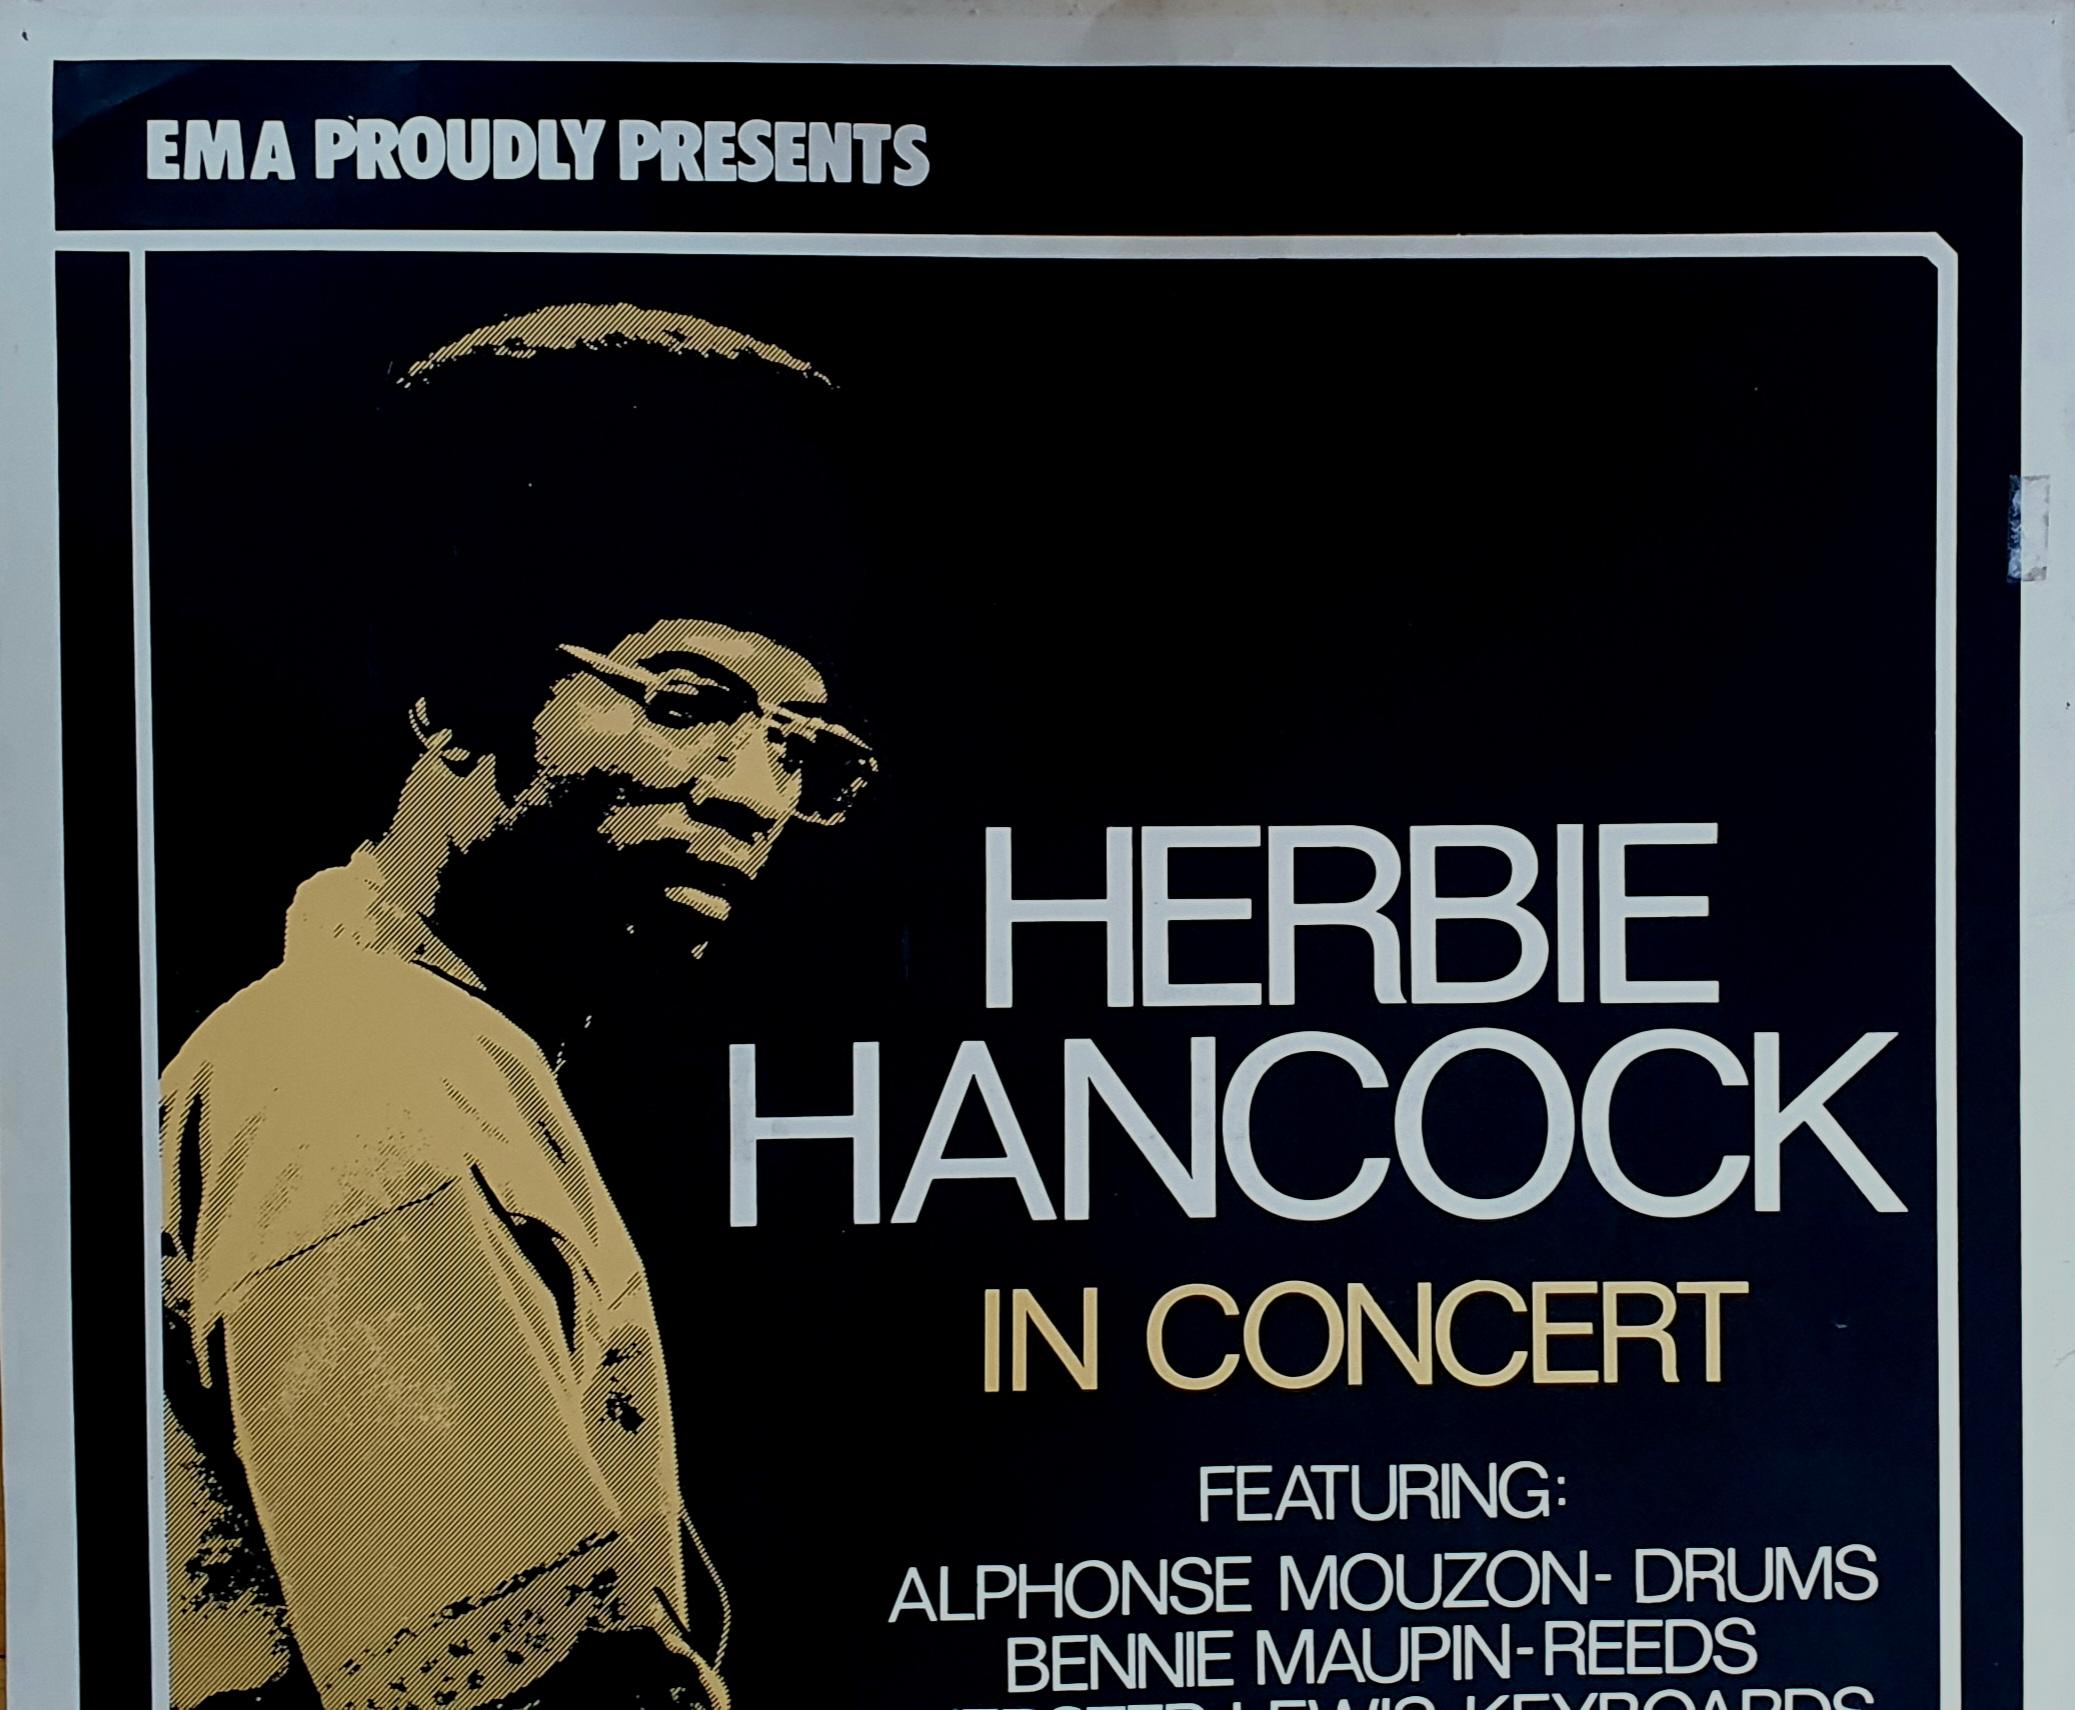 Affiche publicitaire originale pour un concert de Herbie Hancocks dans la salle de concert Tiviolis, Copenhague, Danemark.

En 1979, les jardins de Tivoli ont accueilli un concert mémorable du légendaire pianiste de jazz Herbie Hancock. L'événement